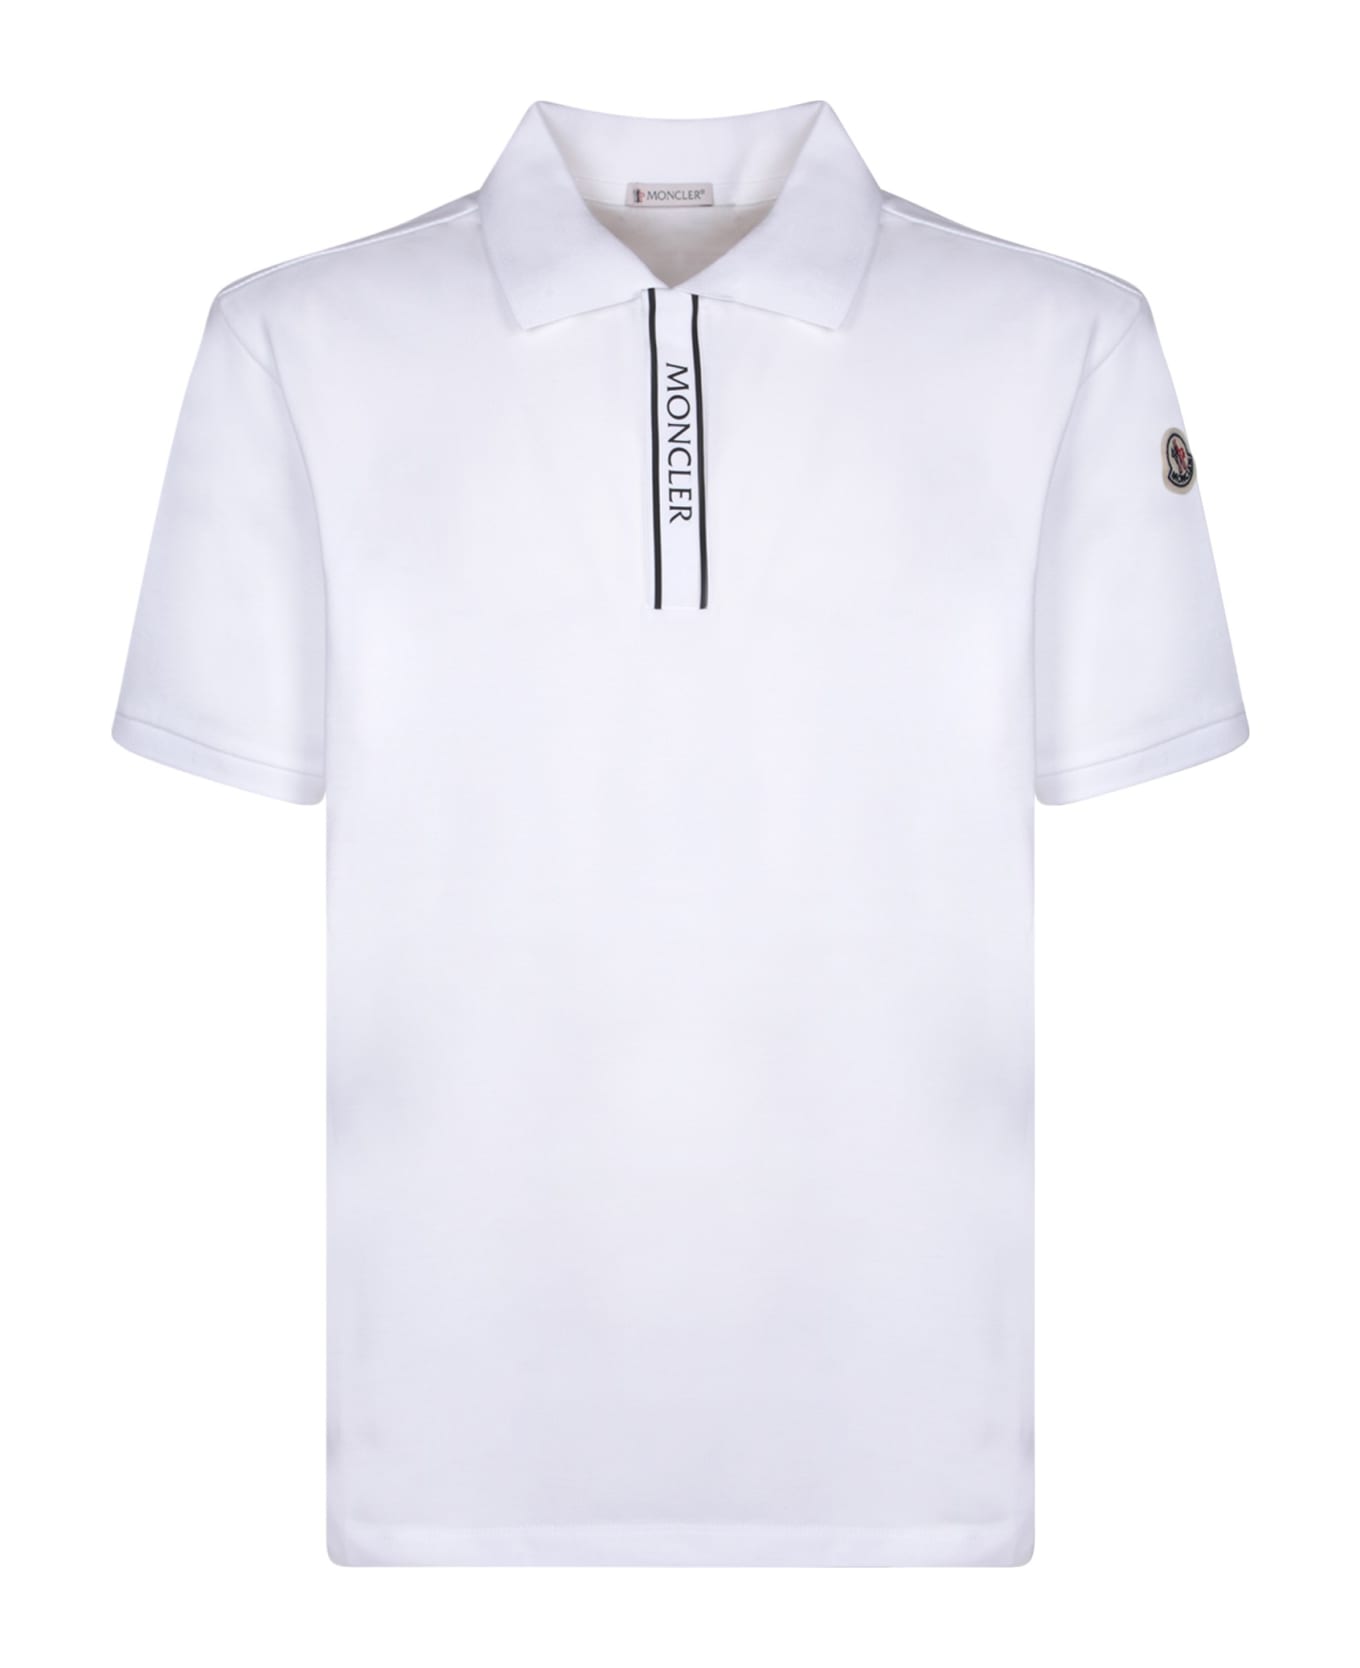 Moncler Front Logo White Polo Shirt - White